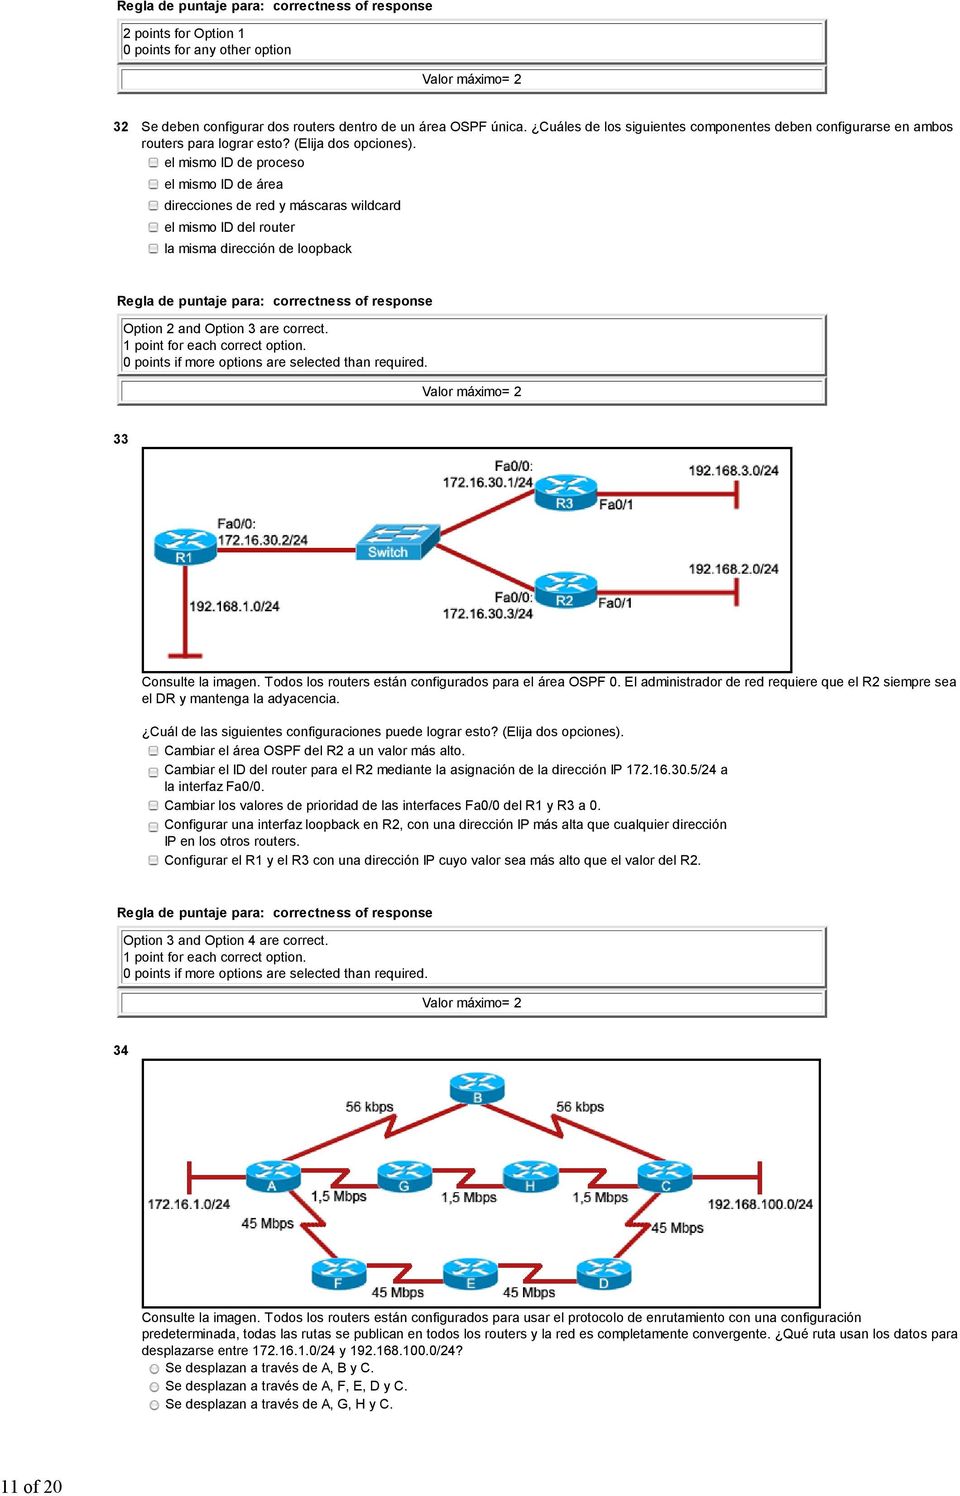 33 Consulte la imagen. Todos los routers están configurados para el área OSPF 0. El administrador de red requiere que el R2 siempre sea el DR y mantenga la adyacencia.